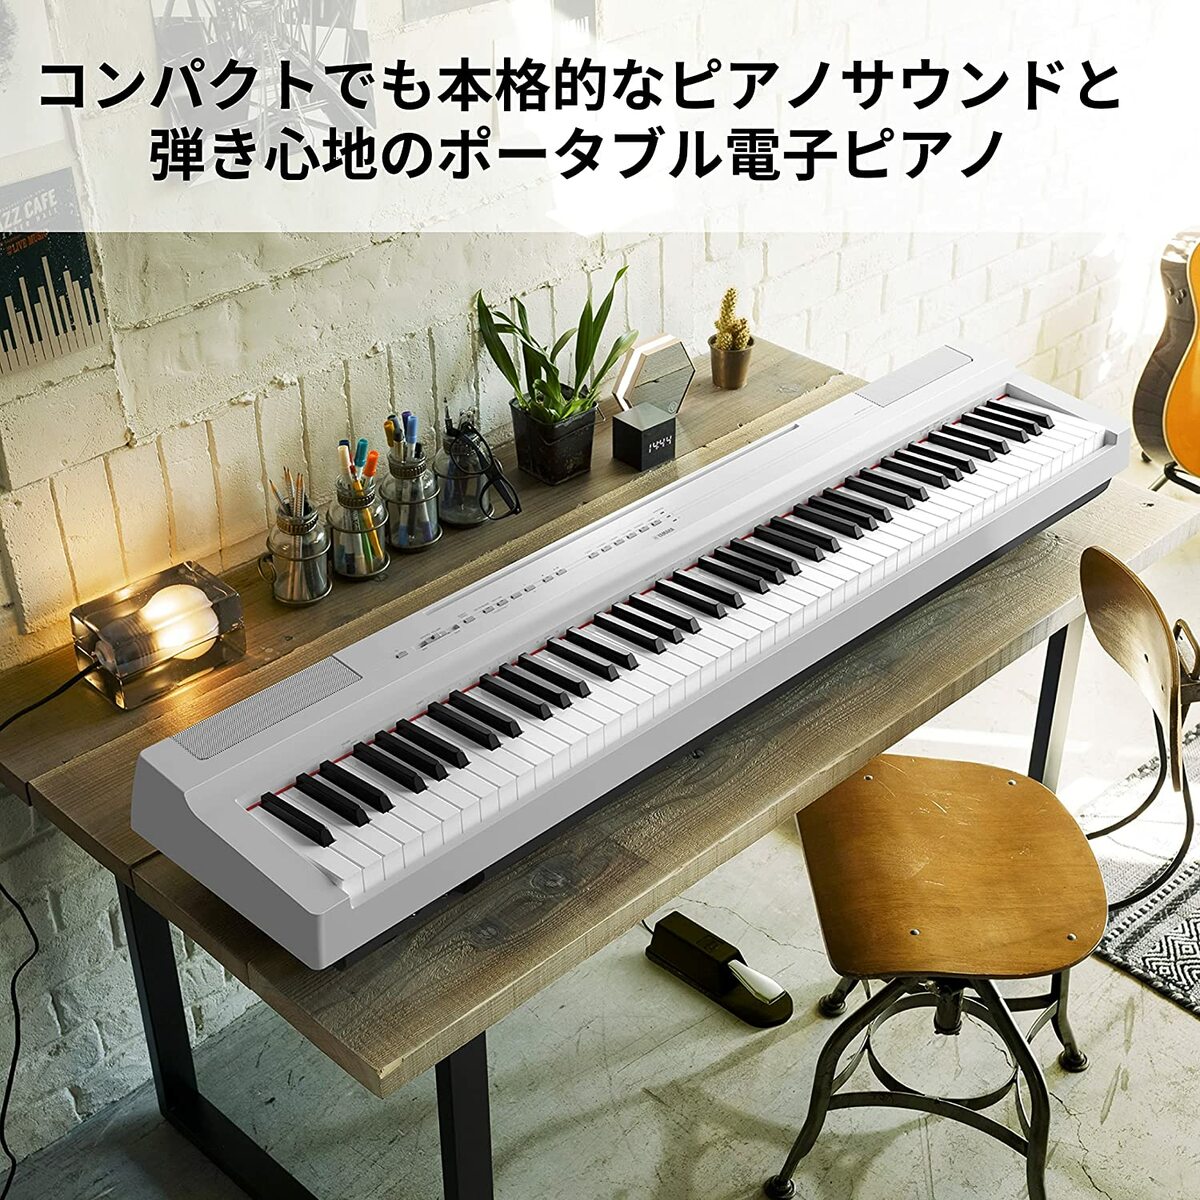 ヤマハ YAMAHA 電子ピアノ P-125aWH ホワイト 88鍵盤 Pシリーズ ピアノ